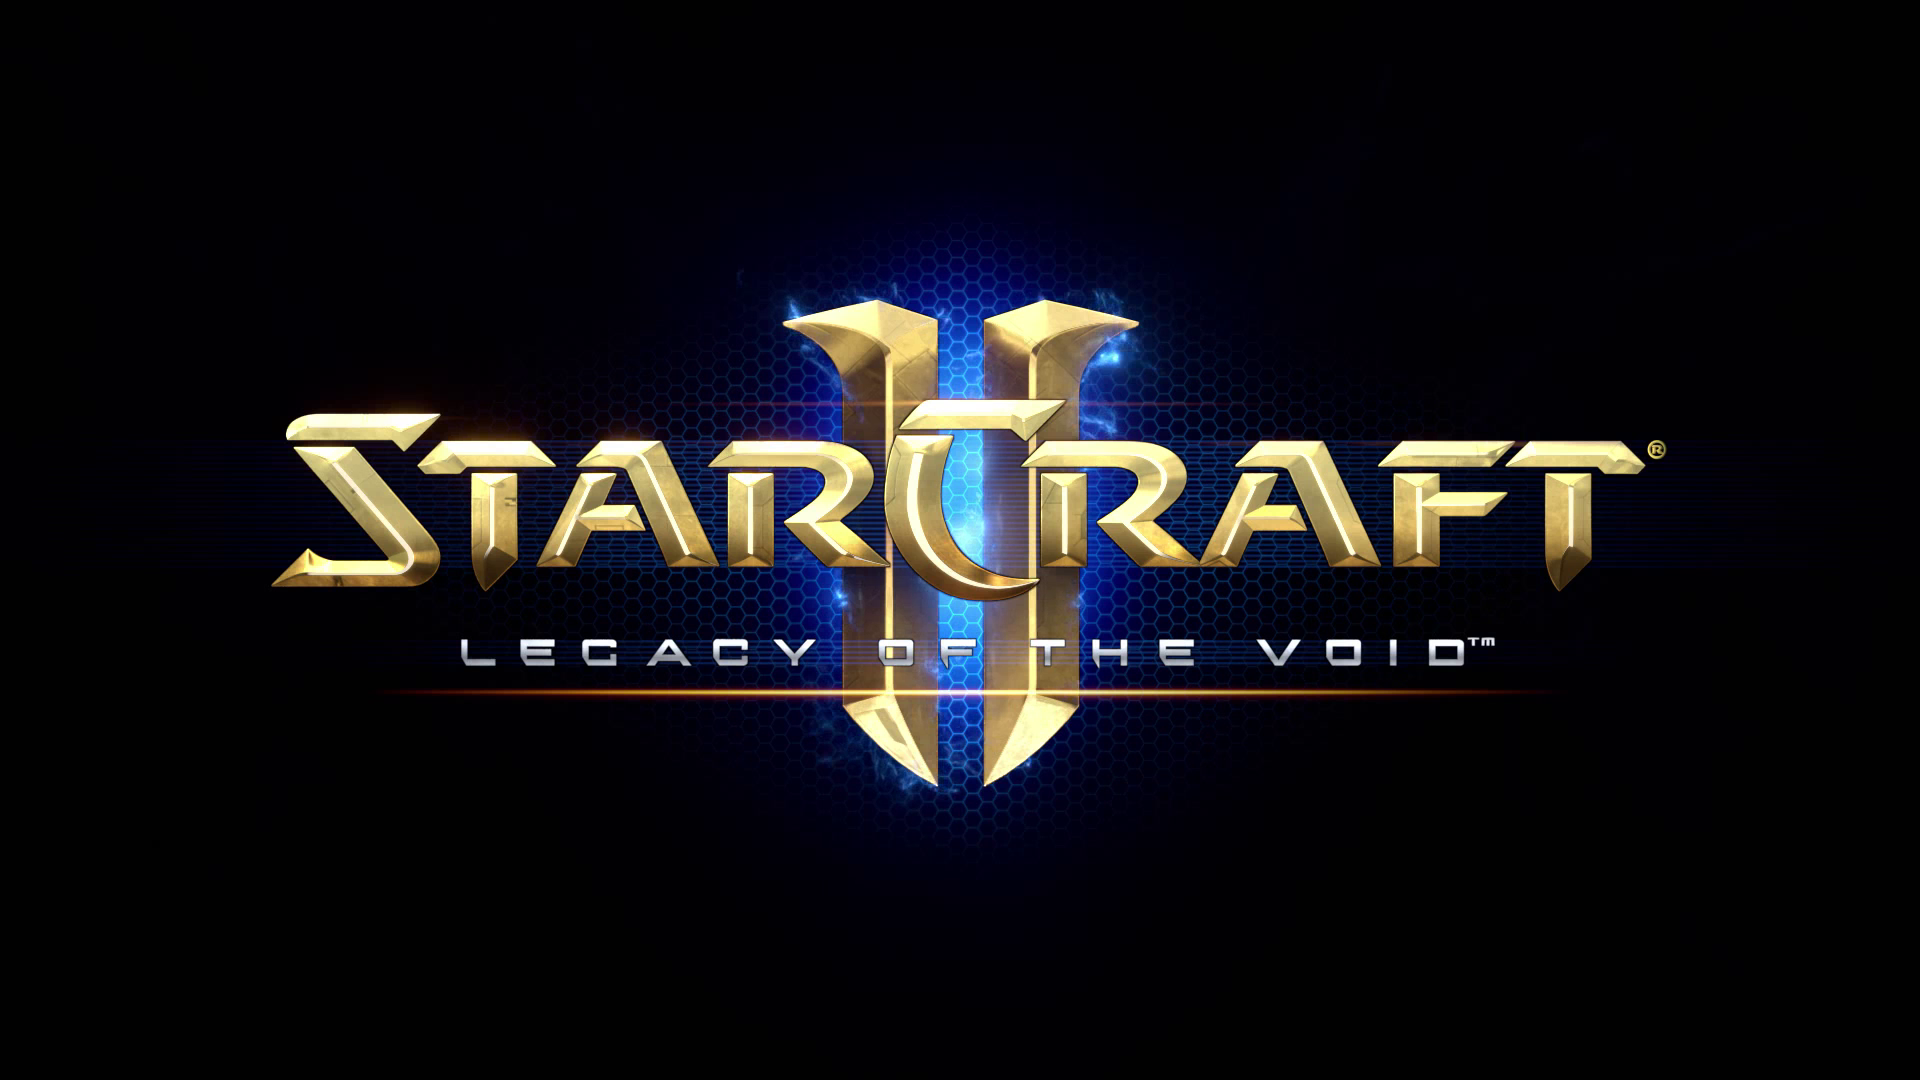 StarCraft II Legacy of the Void - ПОЛНОЕ ПРОХОЖДЕНИЕ 4 Серия ЛЕГЕНДАРНАЯ ЧУМОВАЯ СТРАТЕГИЯ ДЛЯ ДУШИ)